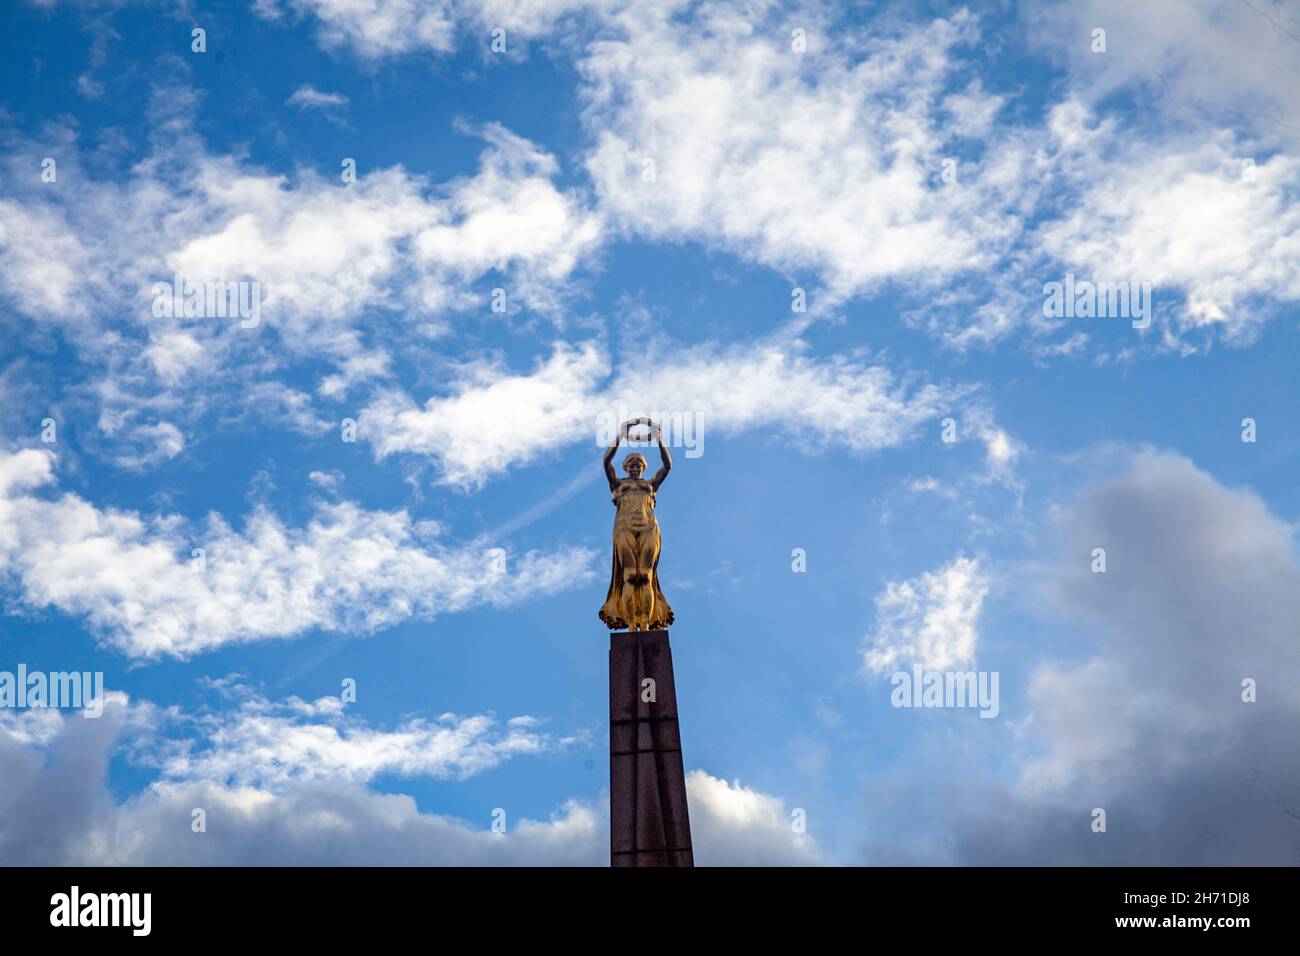 Monumento della memoria vicino a Piazza della Costituzione. Si tratta di un obelisco di granito e memoriale di guerra soprannominato "Golden Lady" per la sua statua dorata. Lussemburgo. Foto Stock